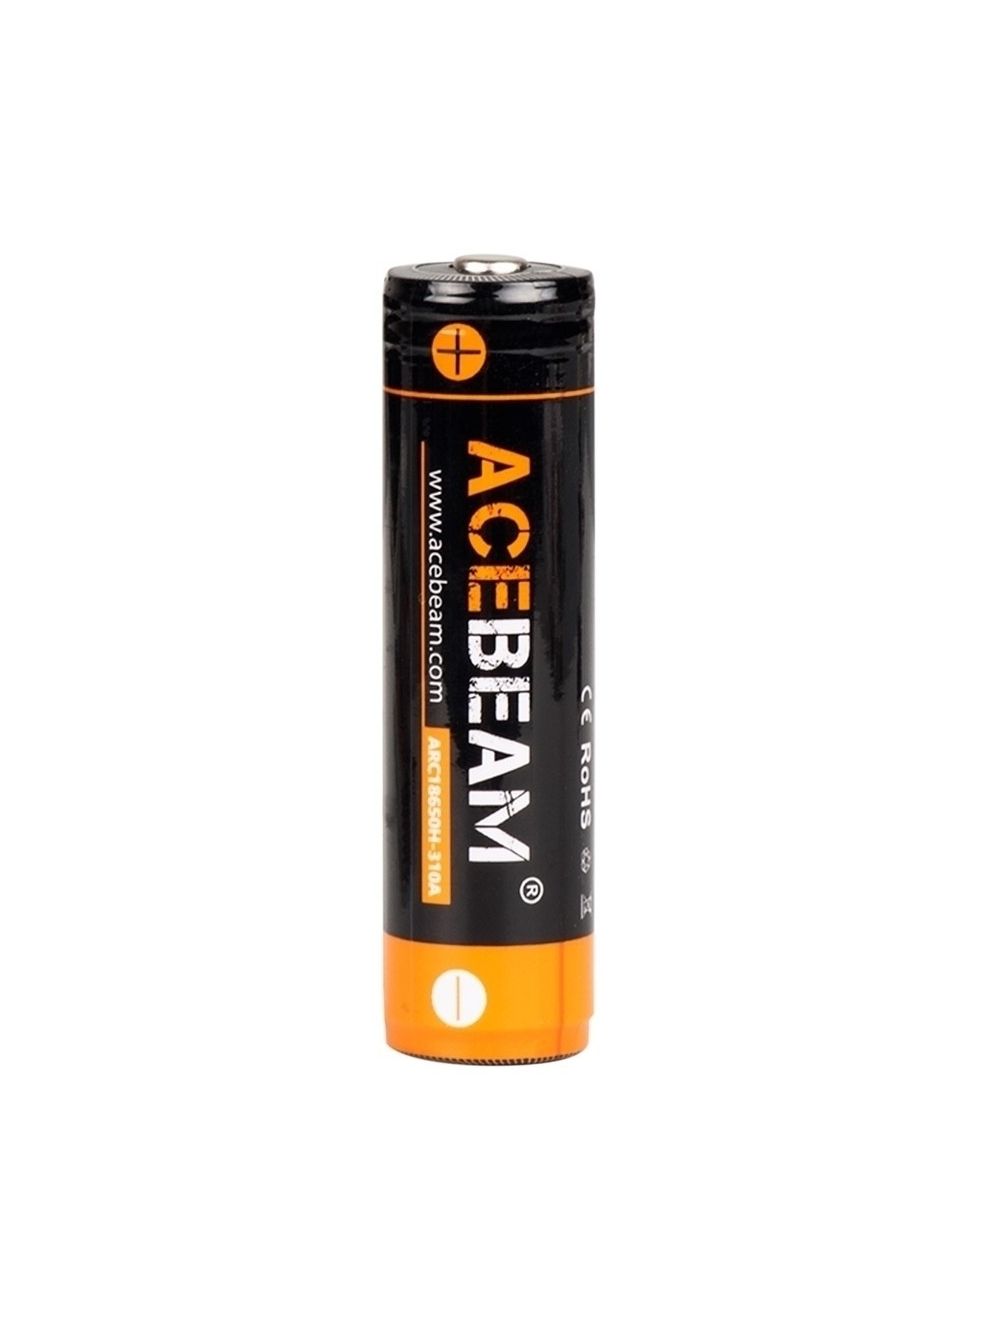 Conceit Doe mee forum Acebeam 18650 Batterij Oplaadbaar Lithium kopen? Zaklampen.nl